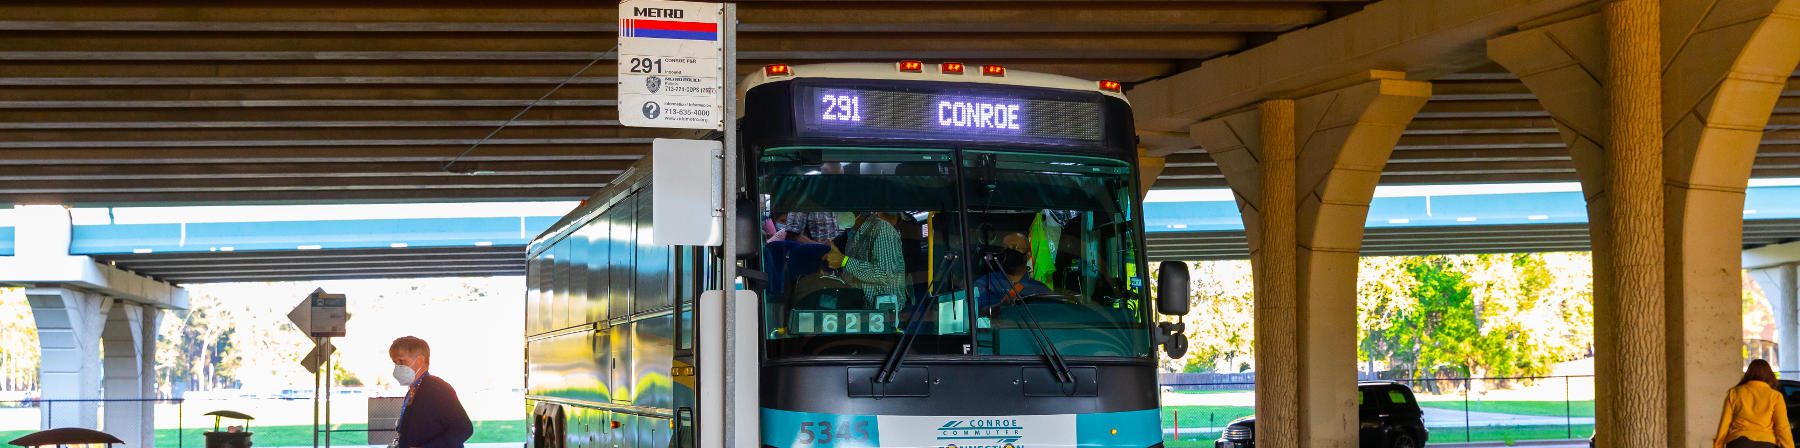 291 Conroe Park & Ride bus